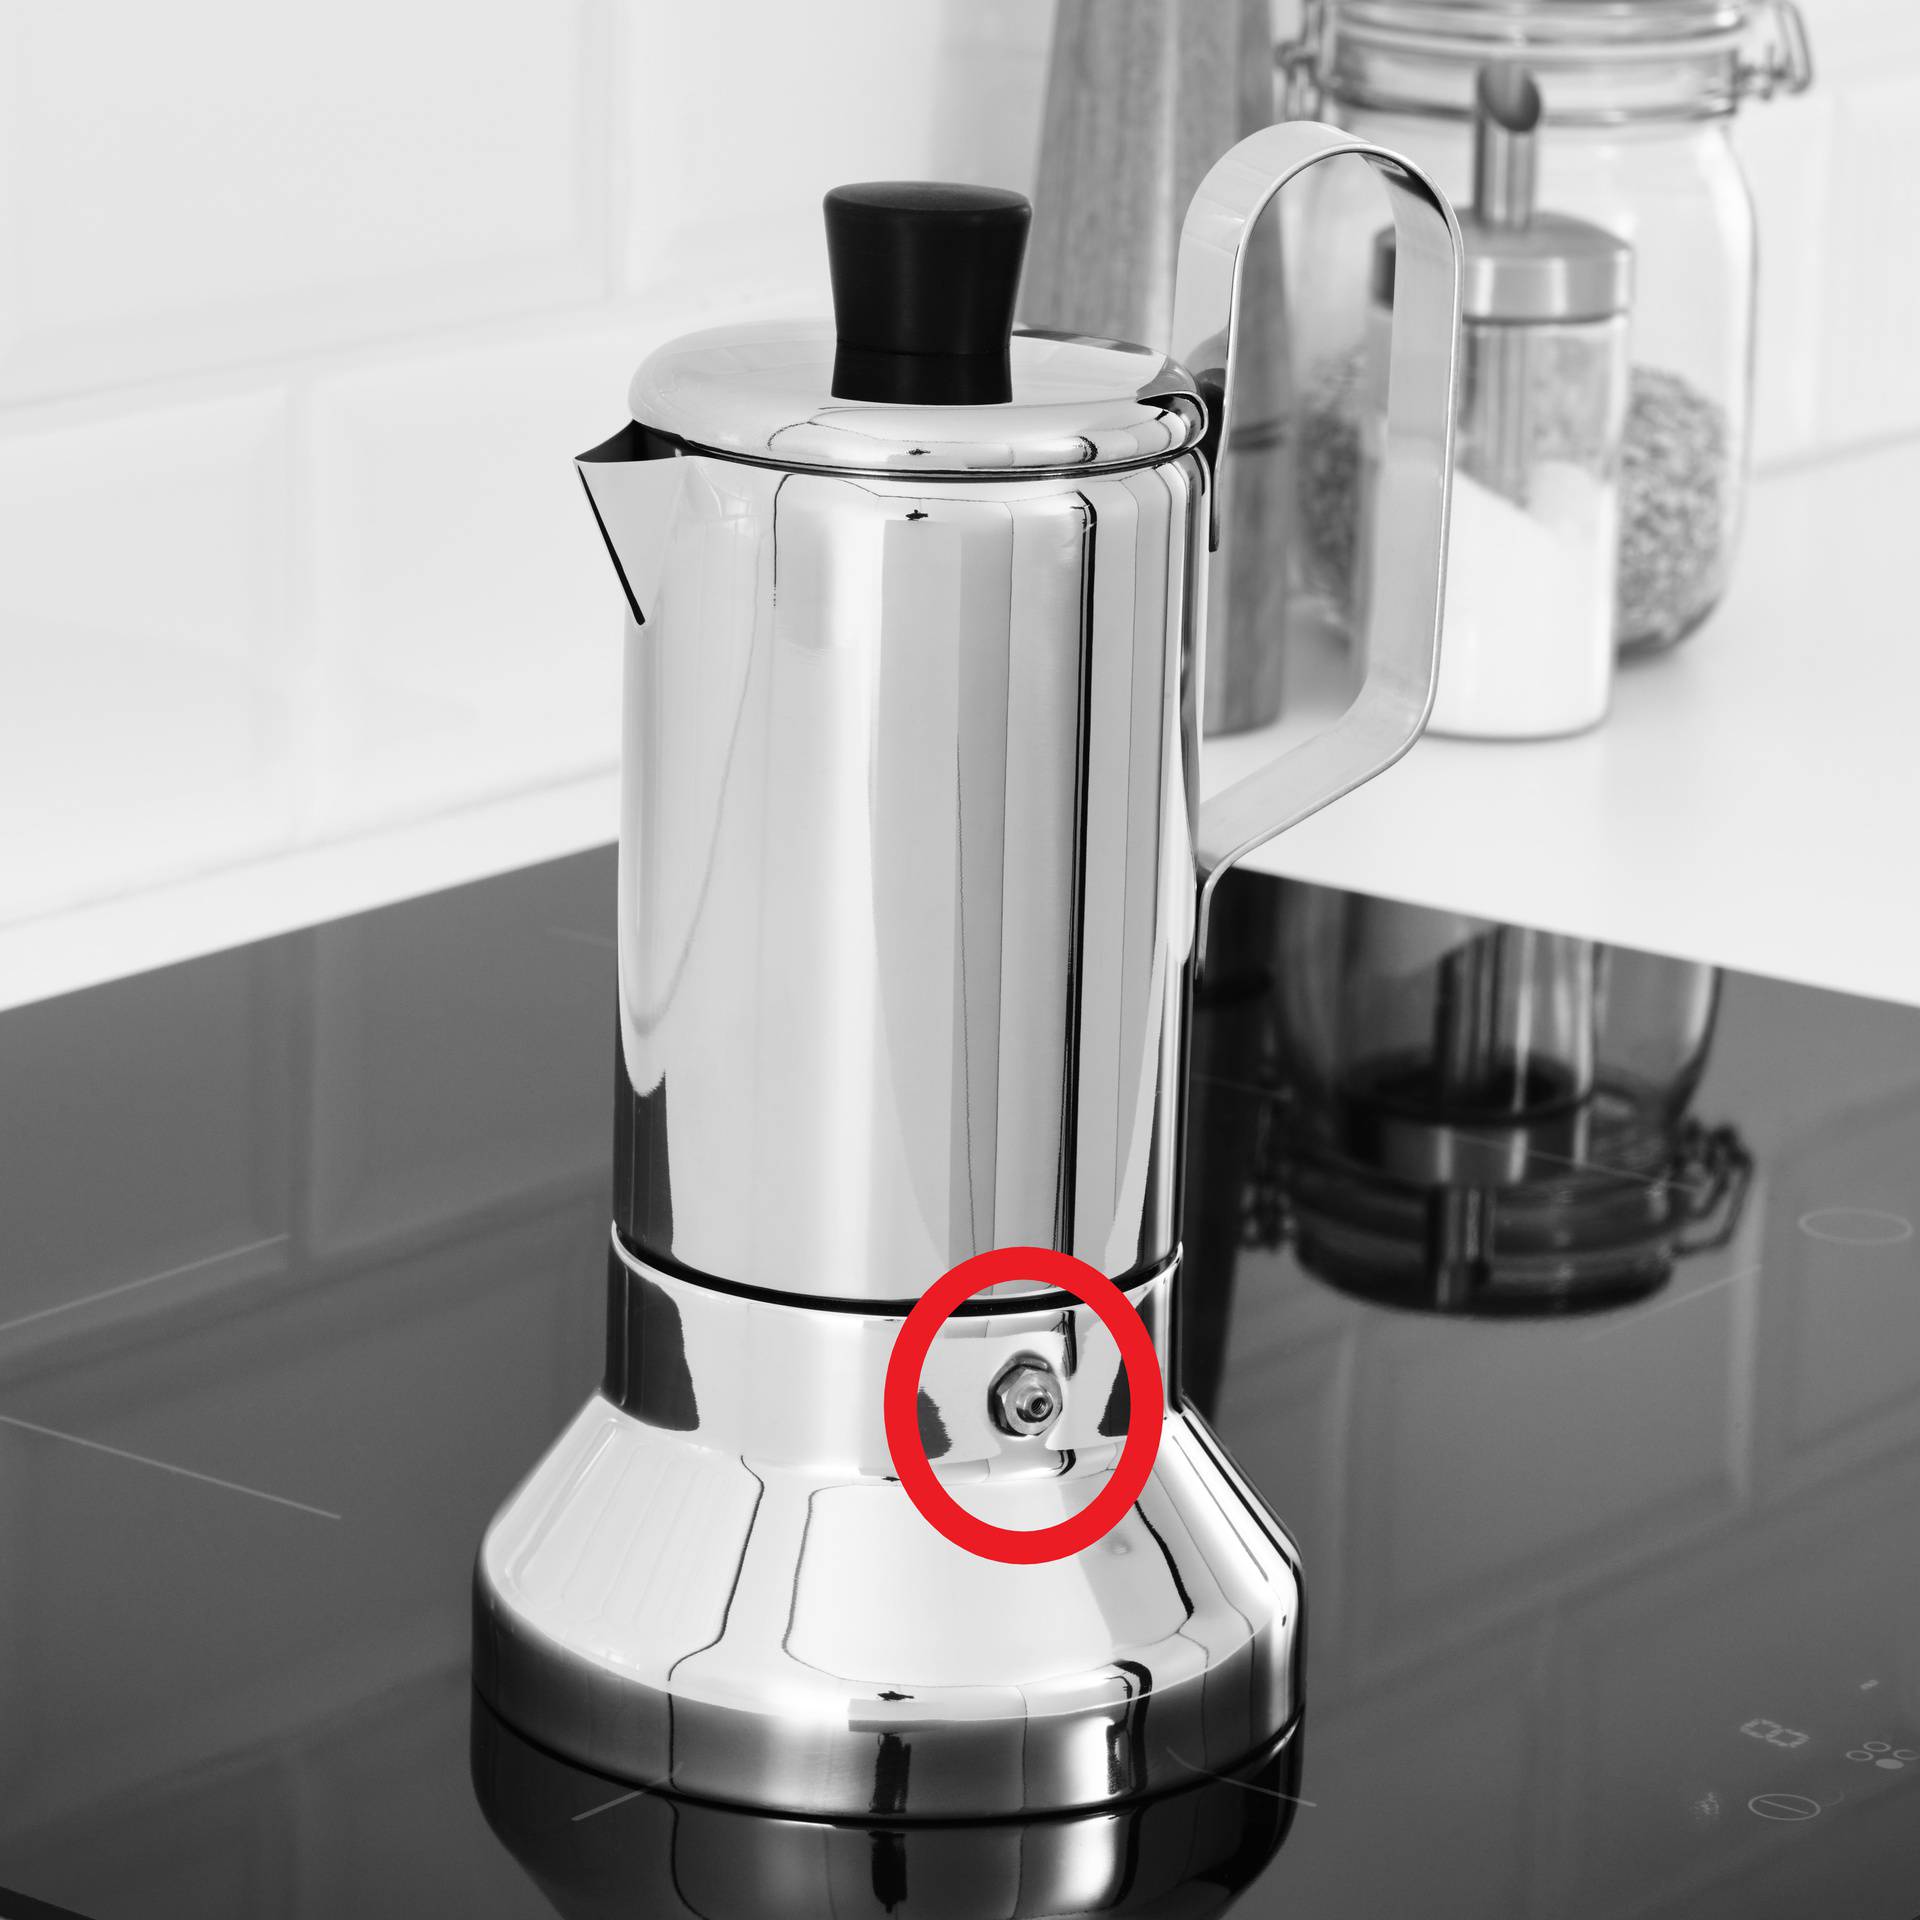 Ikea povlači kuhalo za espresso: 'Rizičan je, nemojte ga koristiti mogao bi se rasprsnuti'